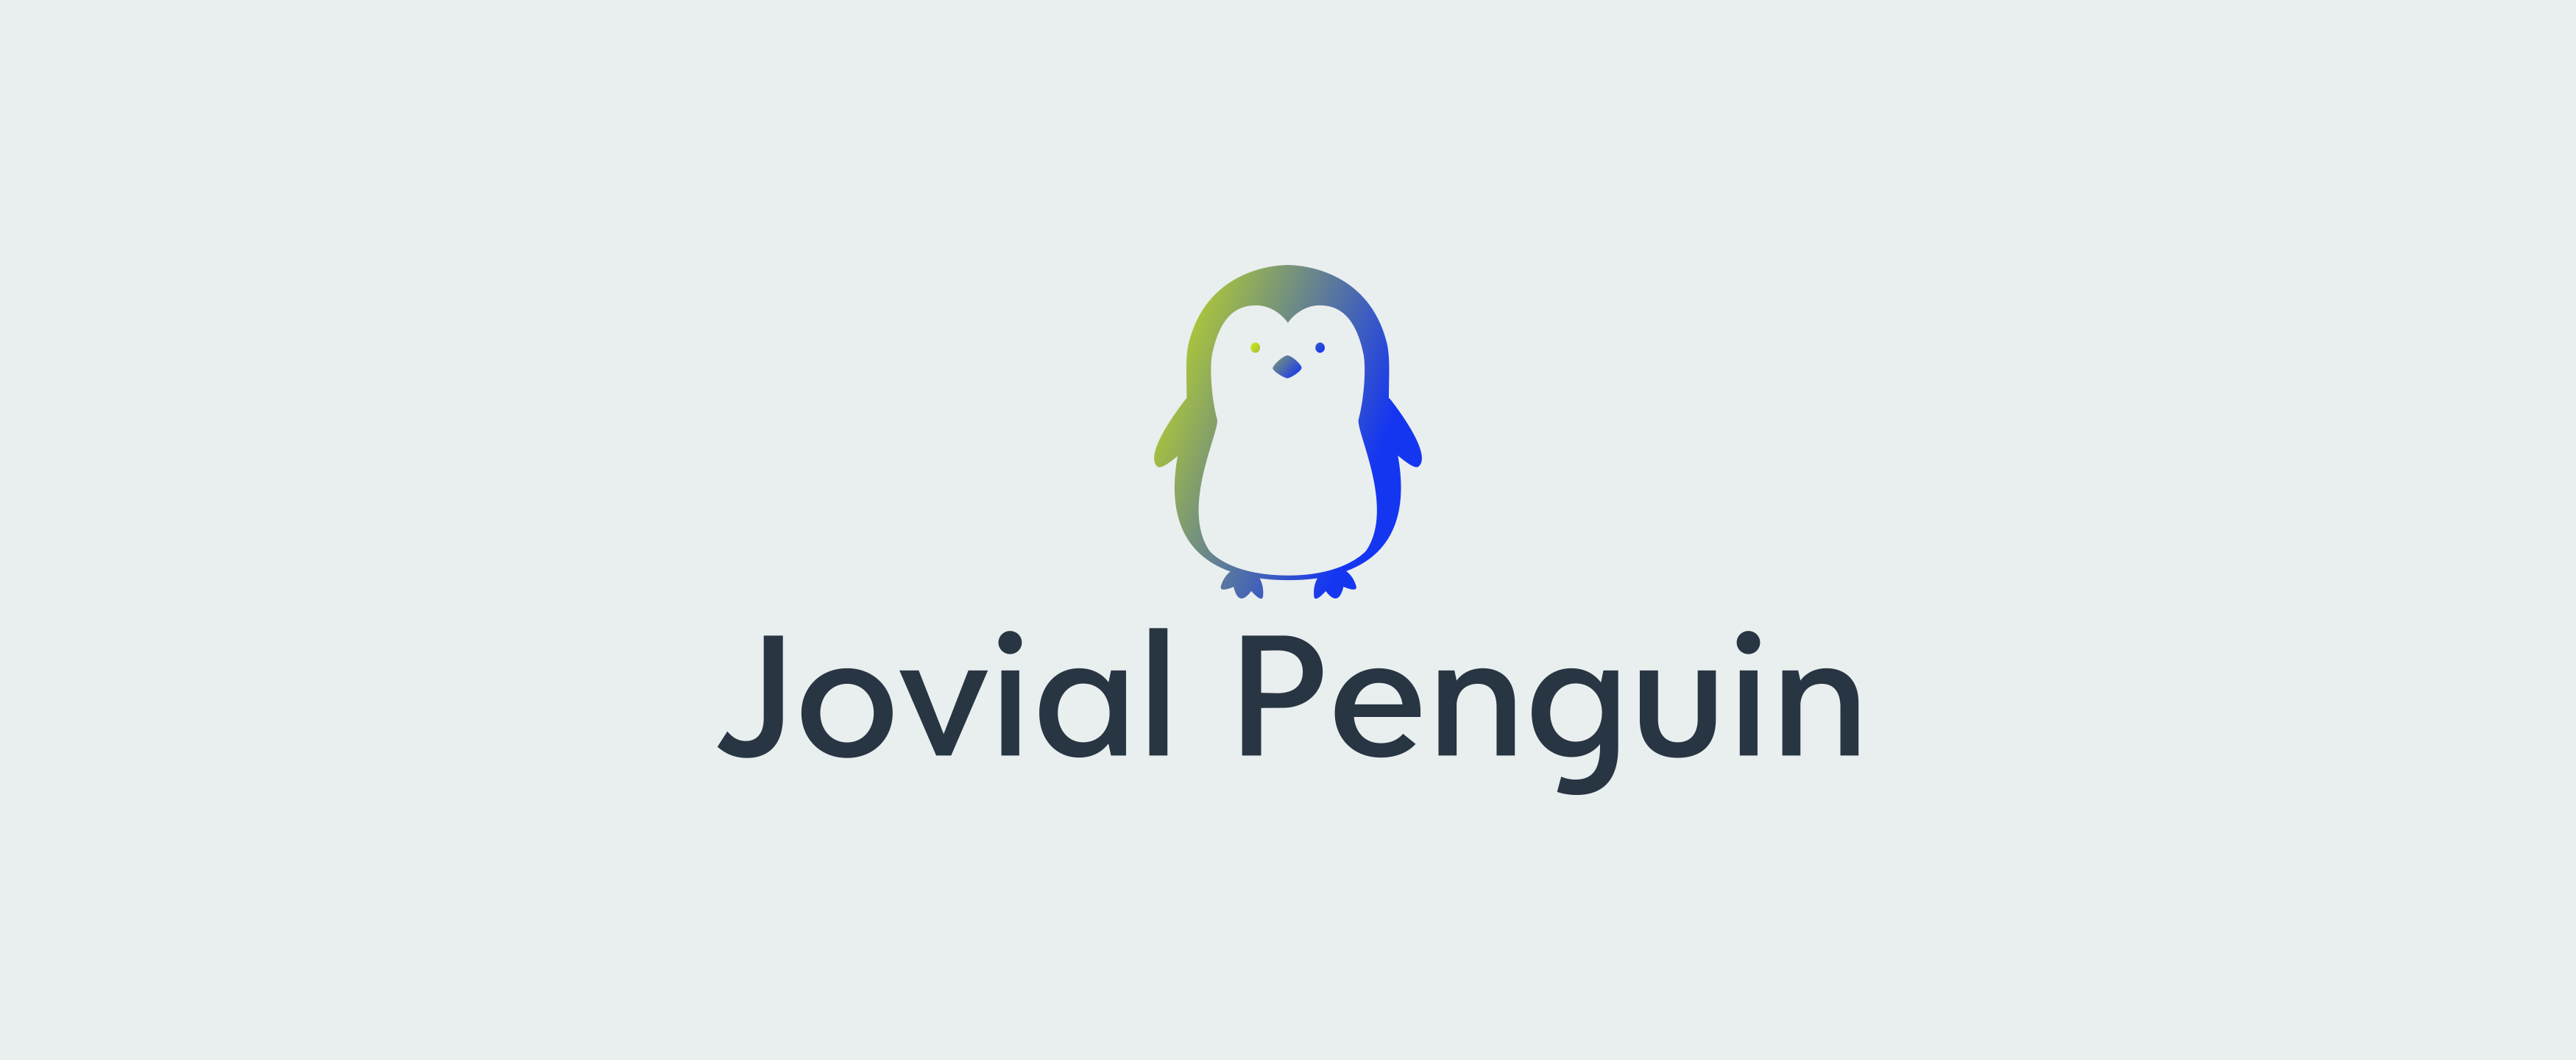 Jovial Penguin logo